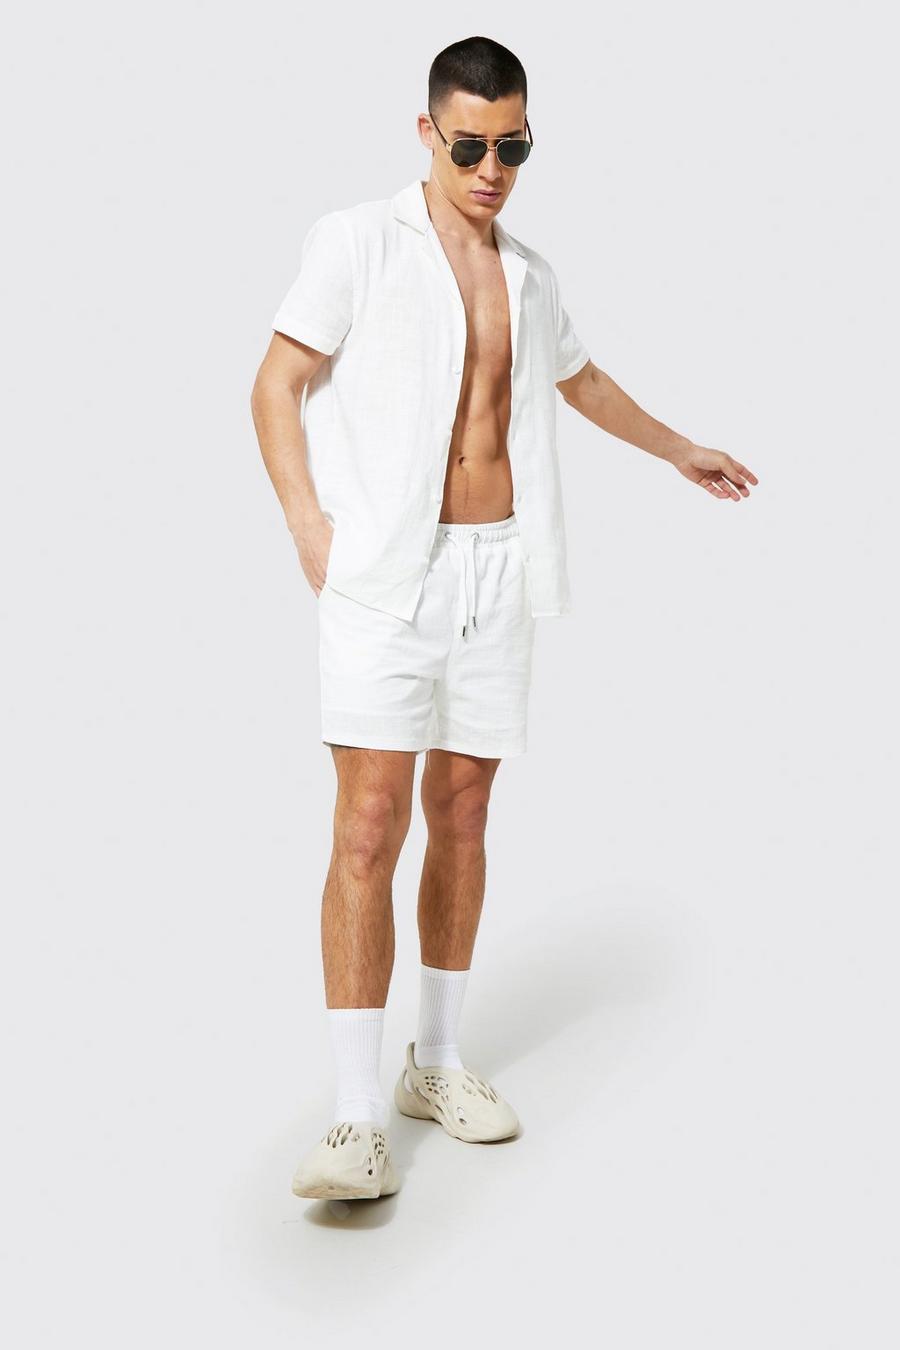 Kurzärmliges strukturiertes Hemd und Shorts, Ecru weiß